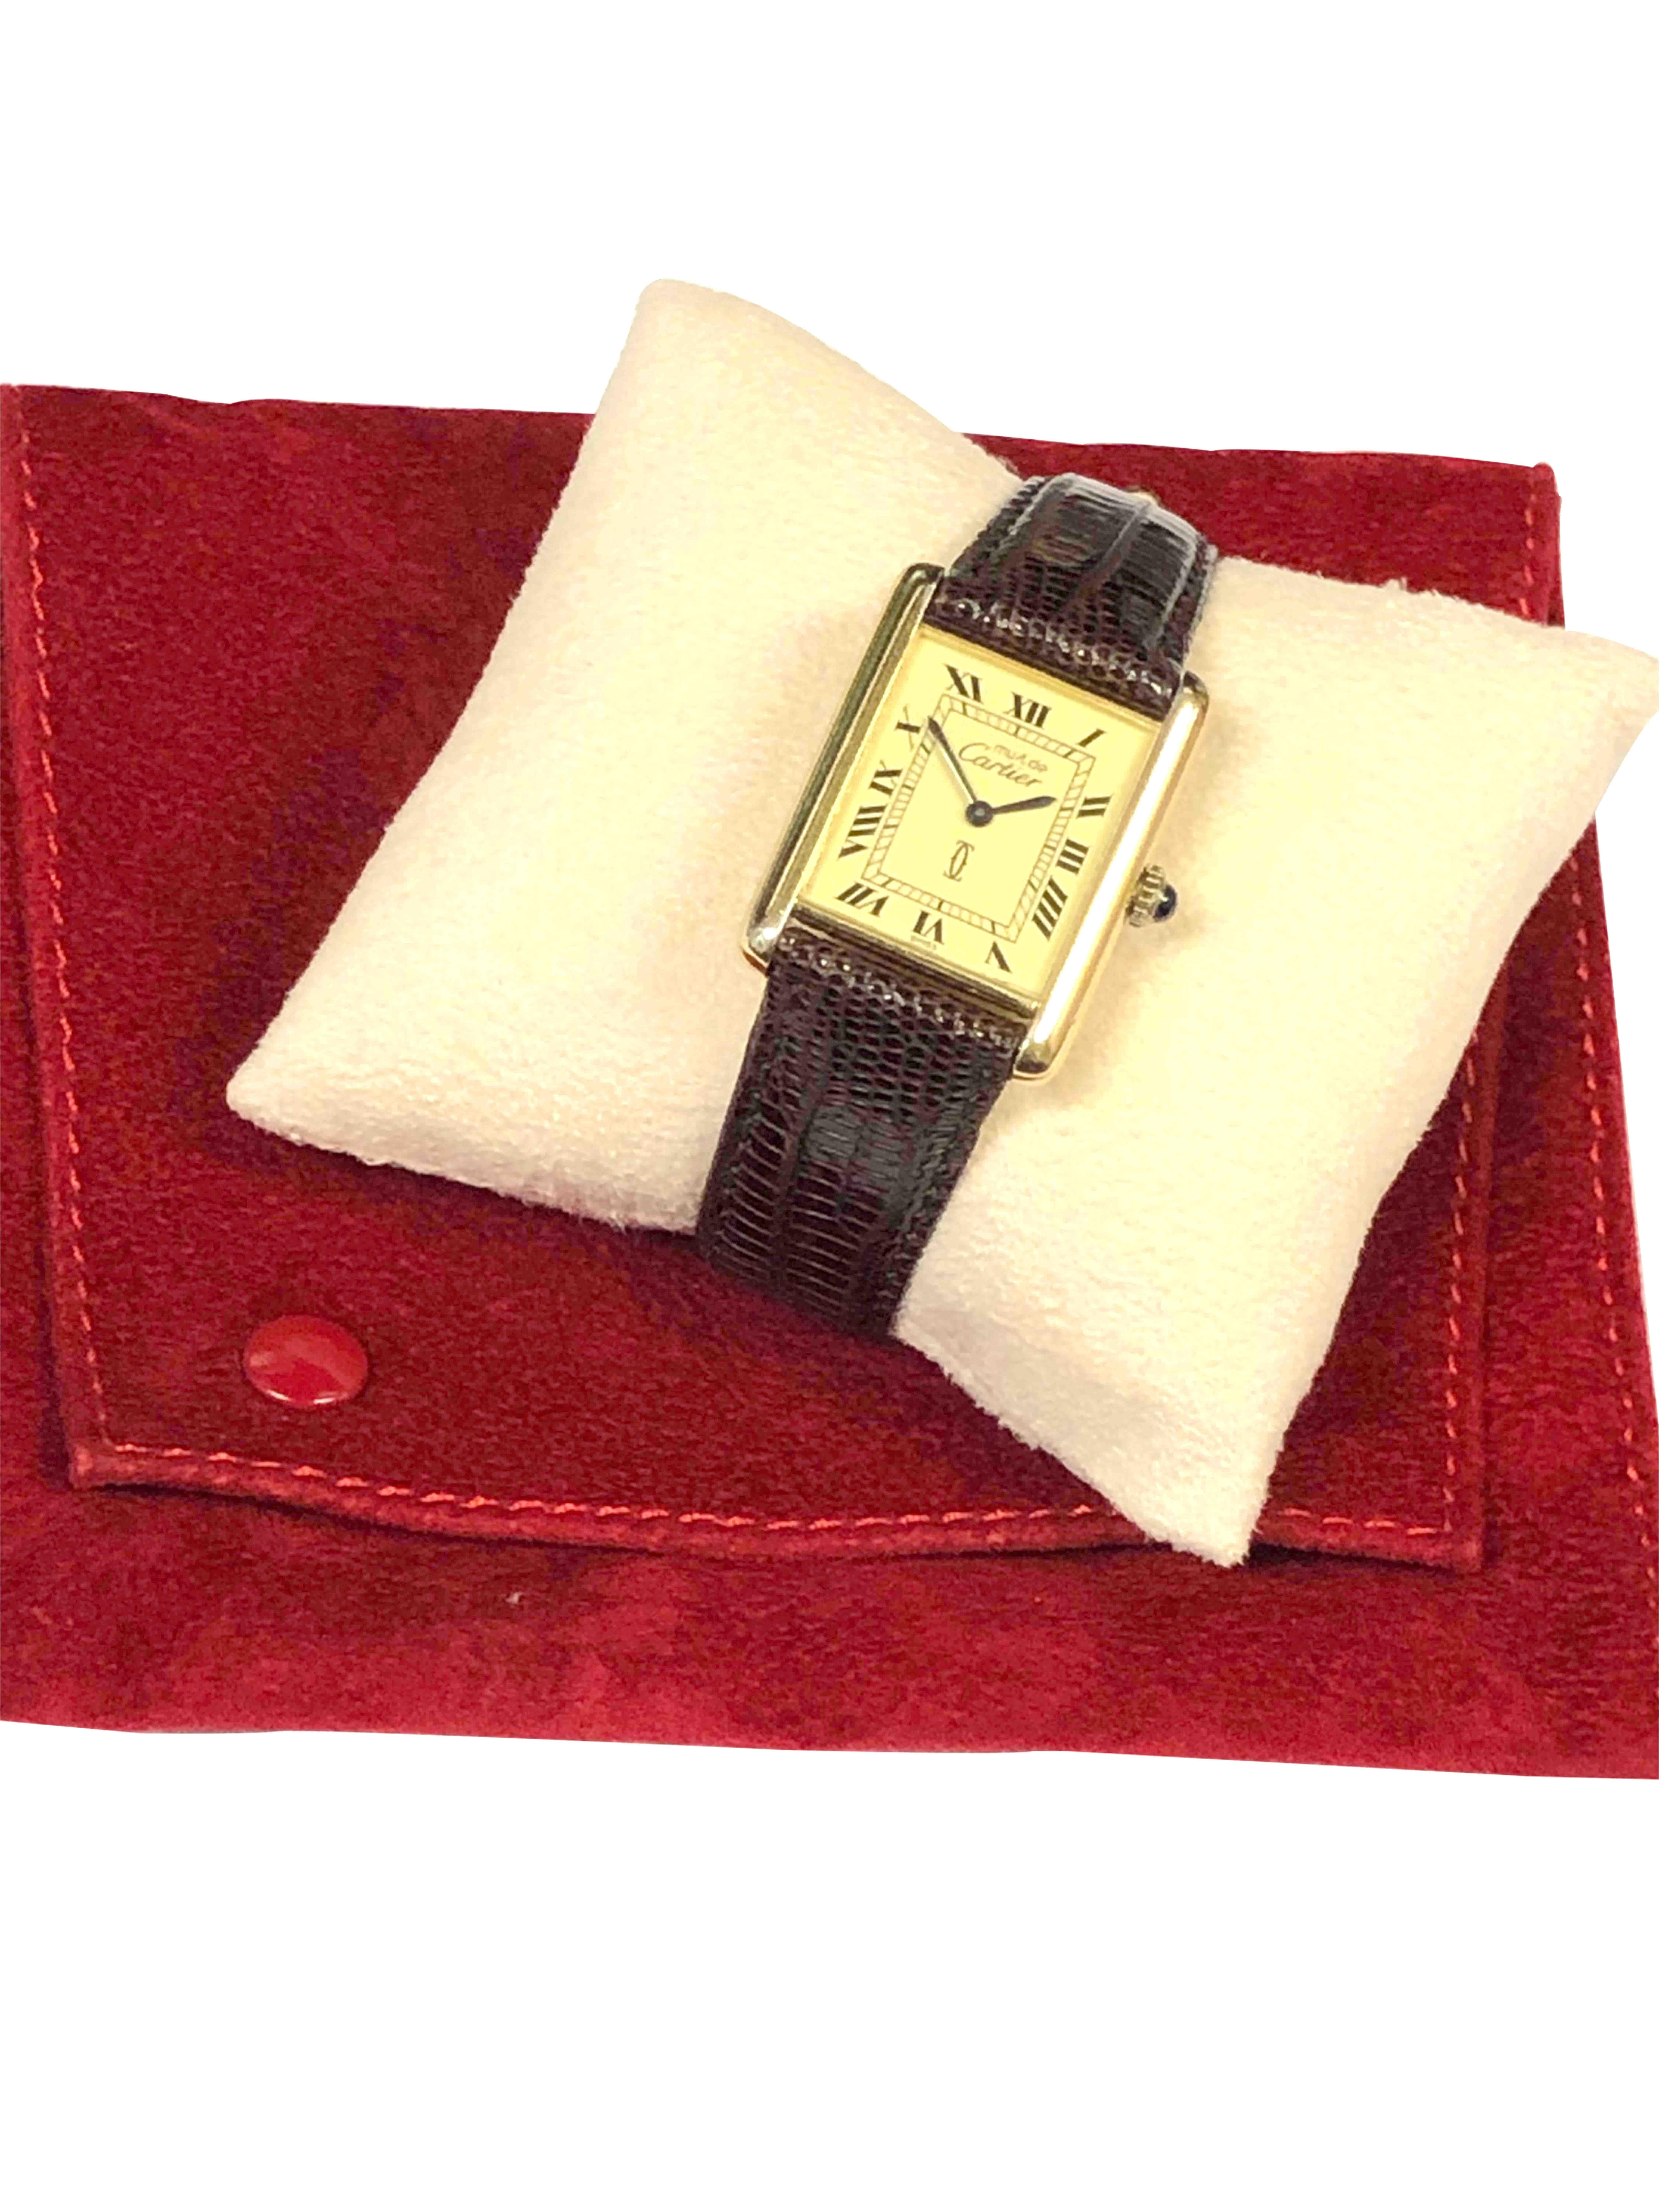 Cartier Classic Tank Vemeil Mechanical Wristwatch 2